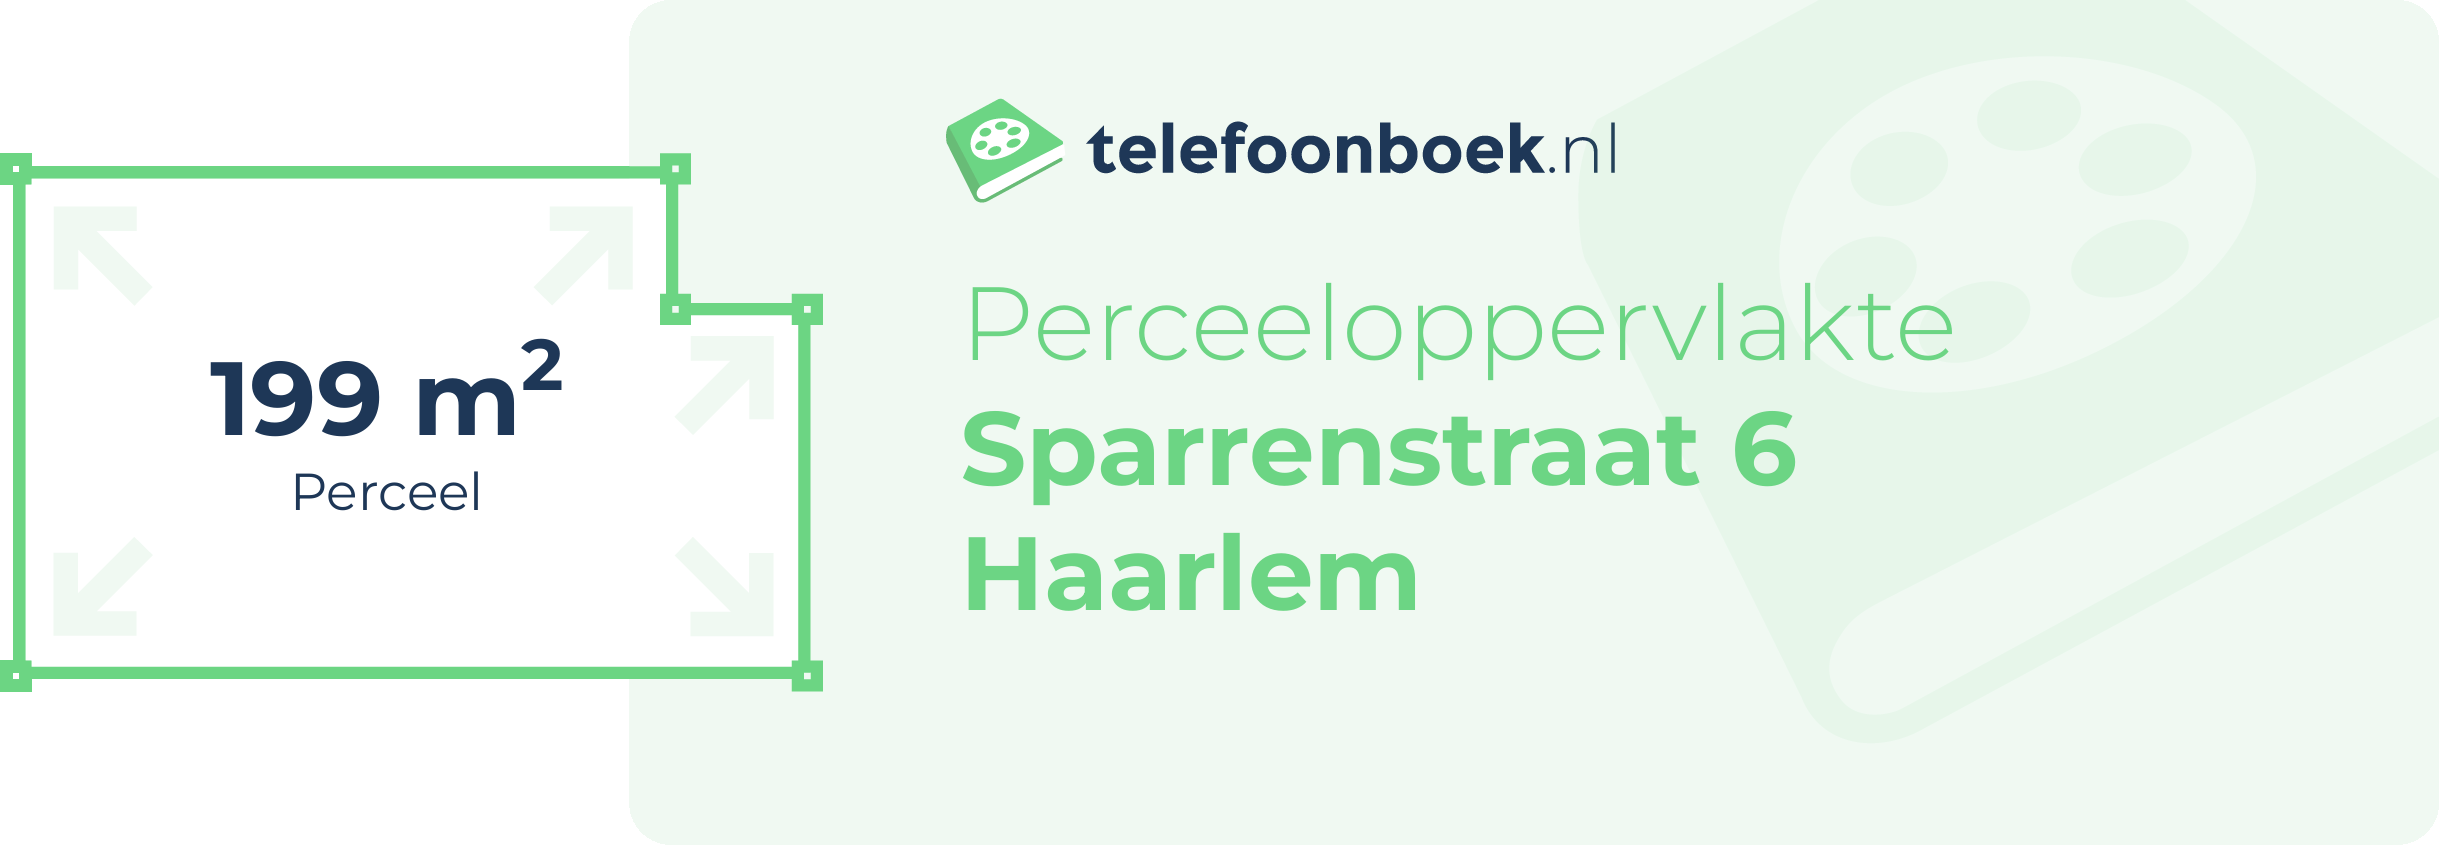 Perceeloppervlakte Sparrenstraat 6 Haarlem